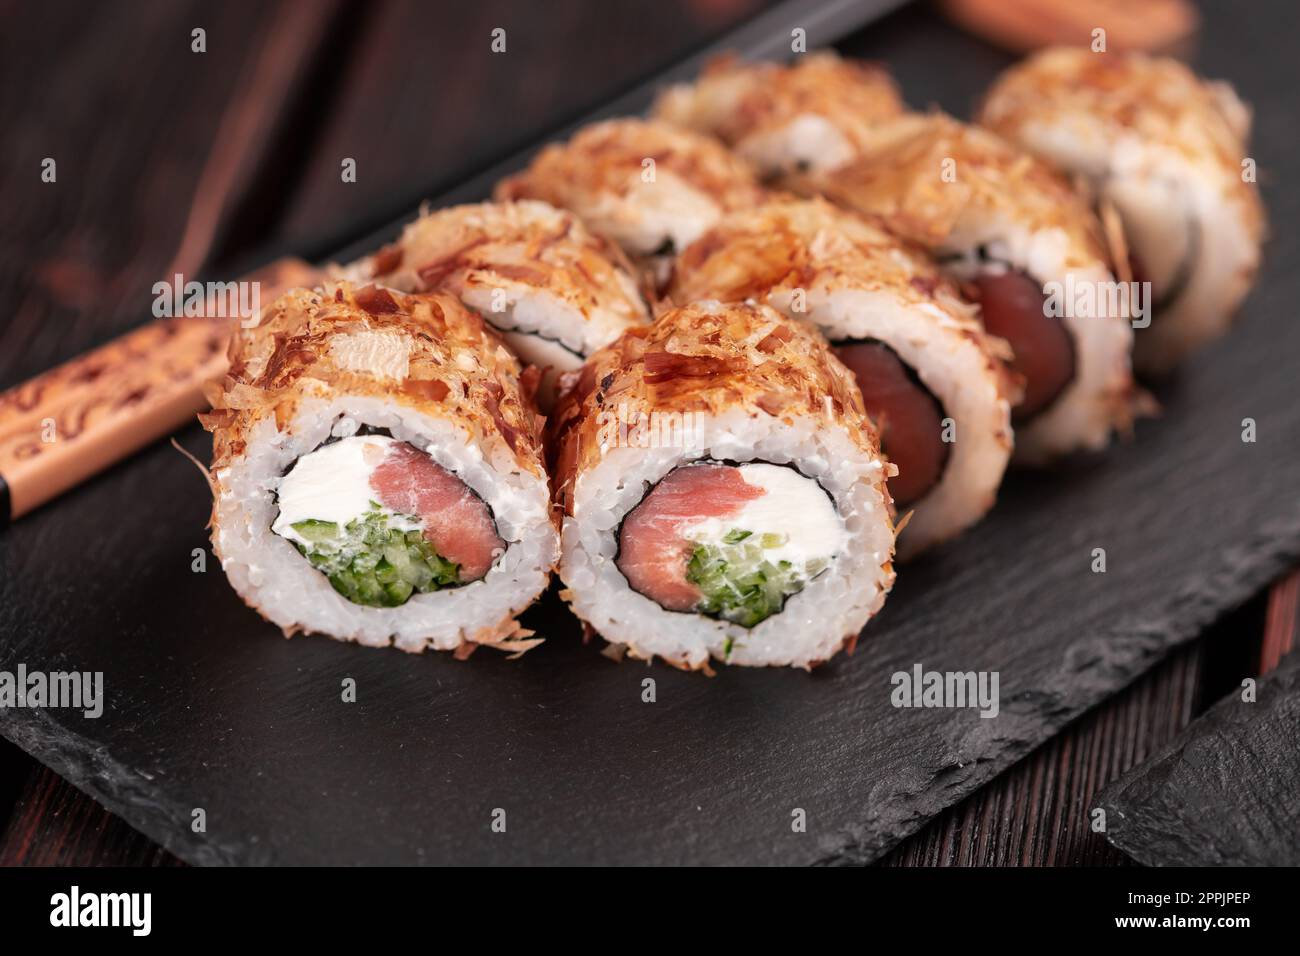 Gros plan sur le saumon et le sushi au saumon avec des flocons de thon - menu asiatique de sushis et cuisine japonaise Banque D'Images